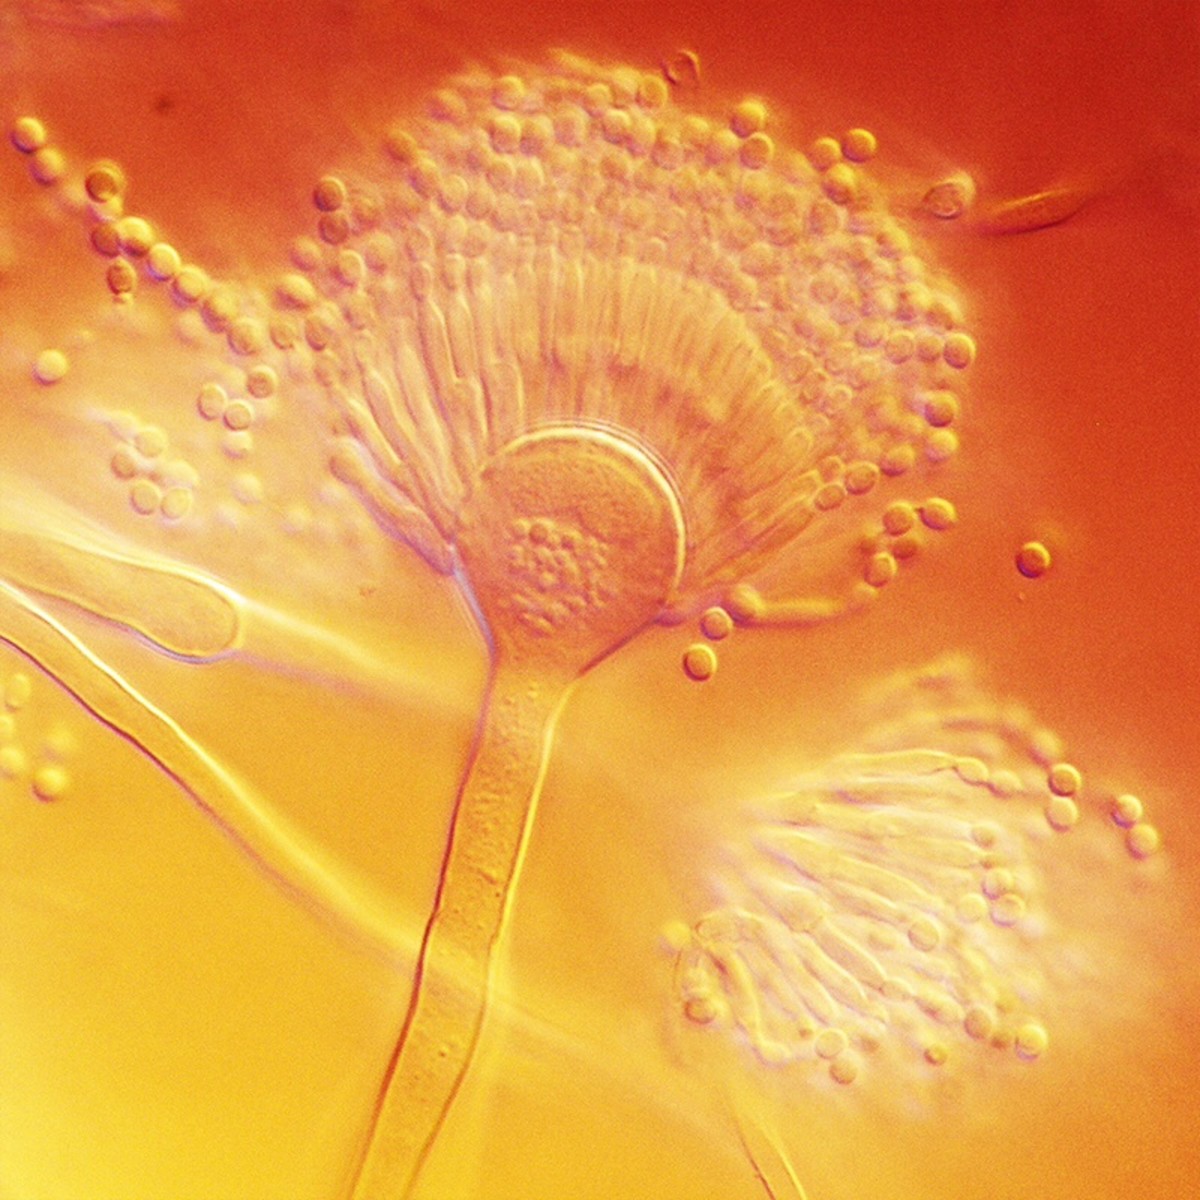 Aspergillus terreus conidiophores